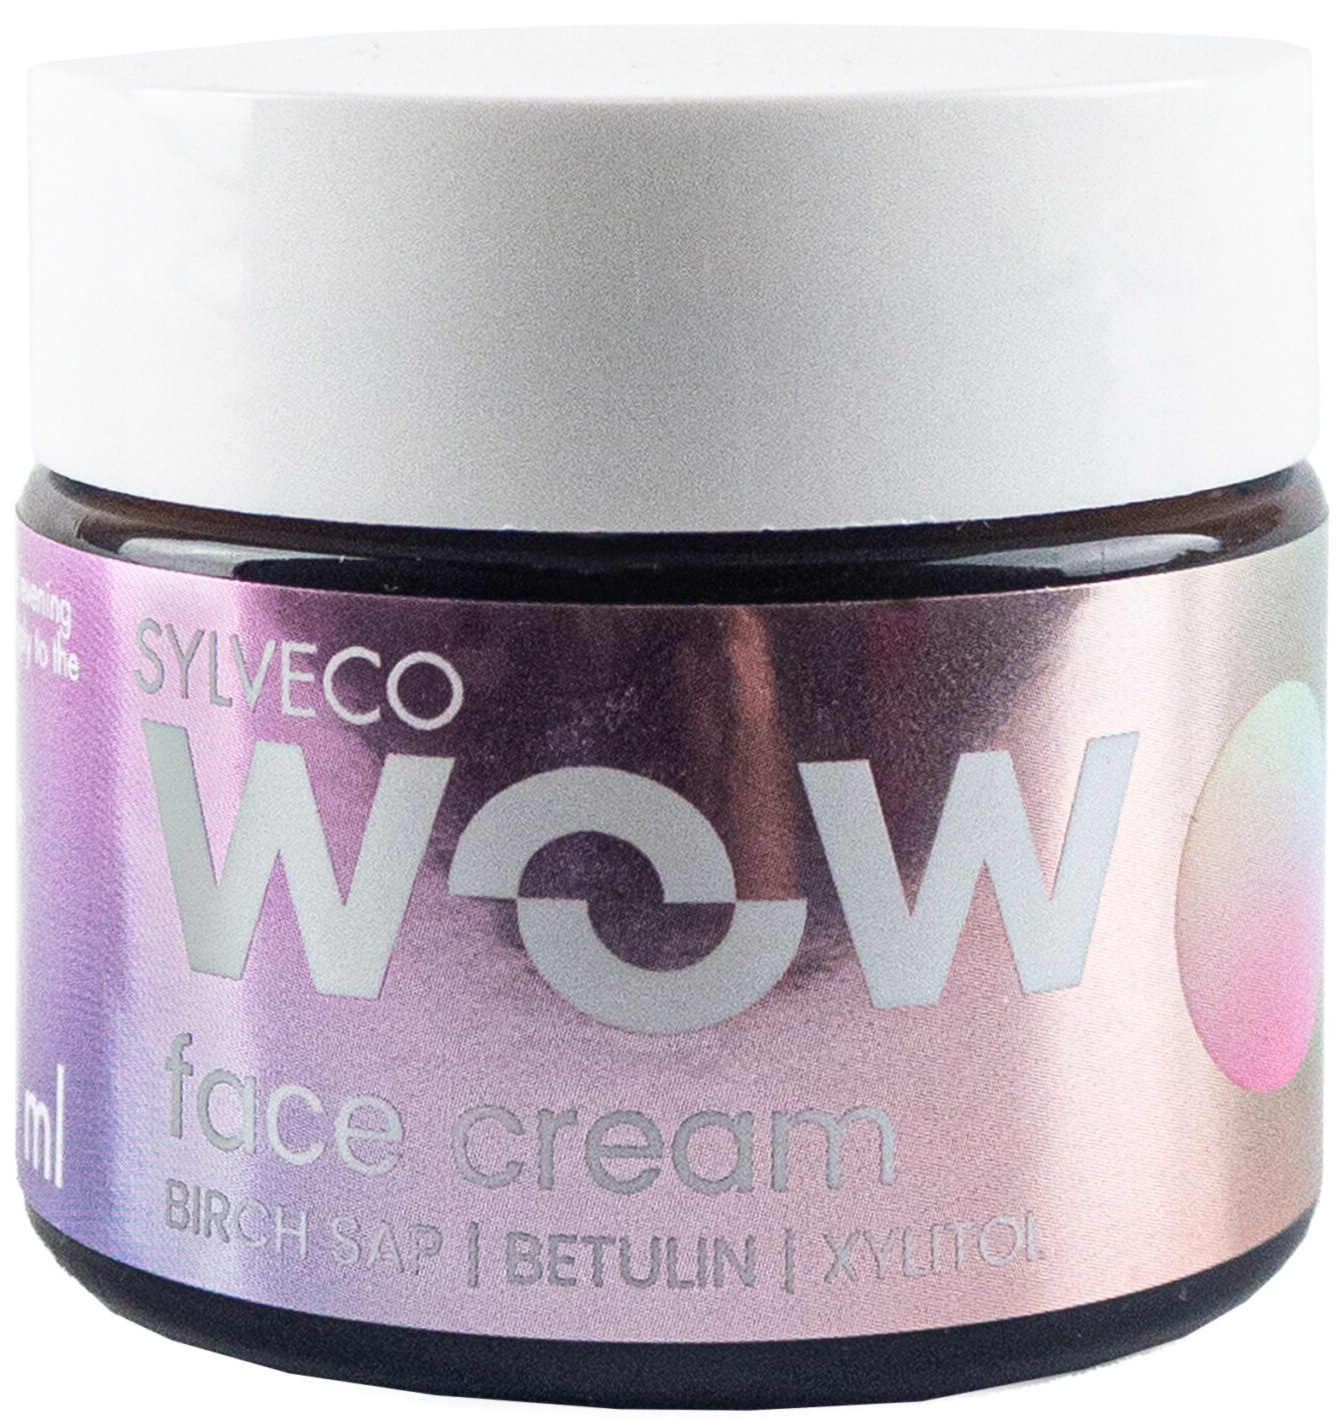 Sylveco Wow Face Cream